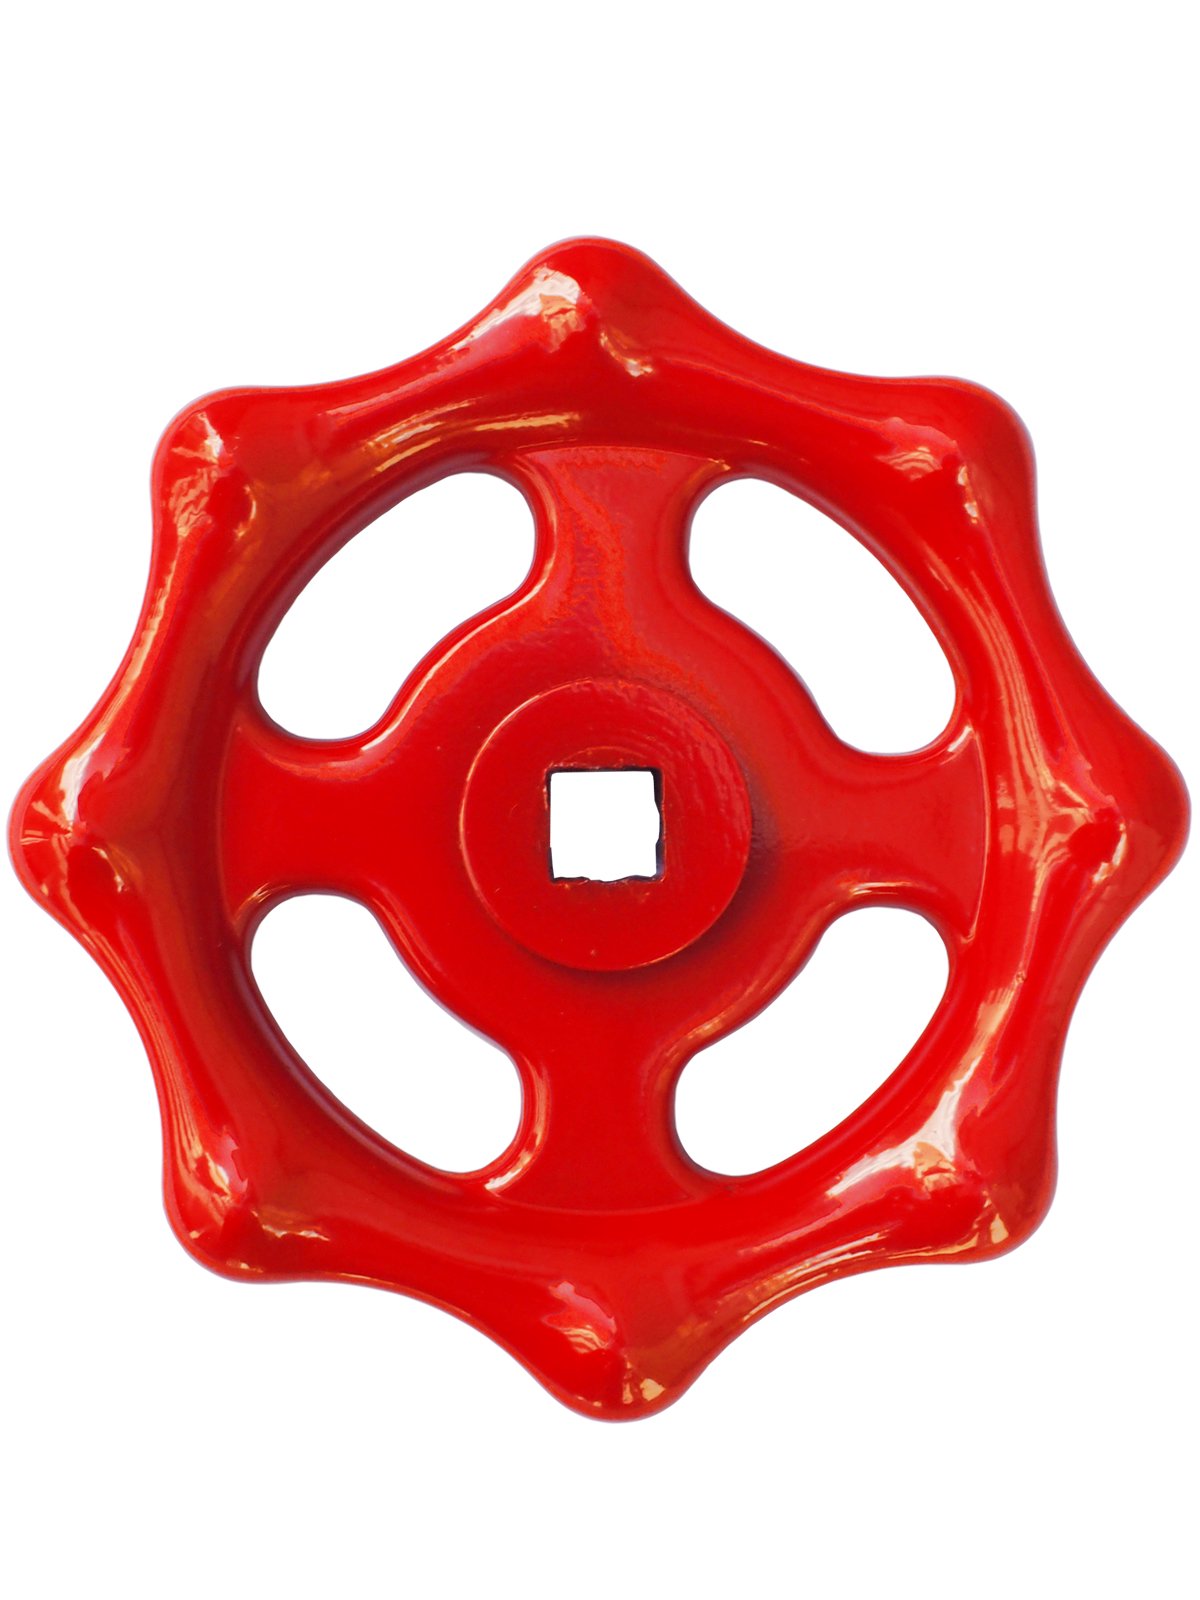 プレスハンドル鉄製 赤色 公式通販 消防グッズ通販の 消防ユニフォーム